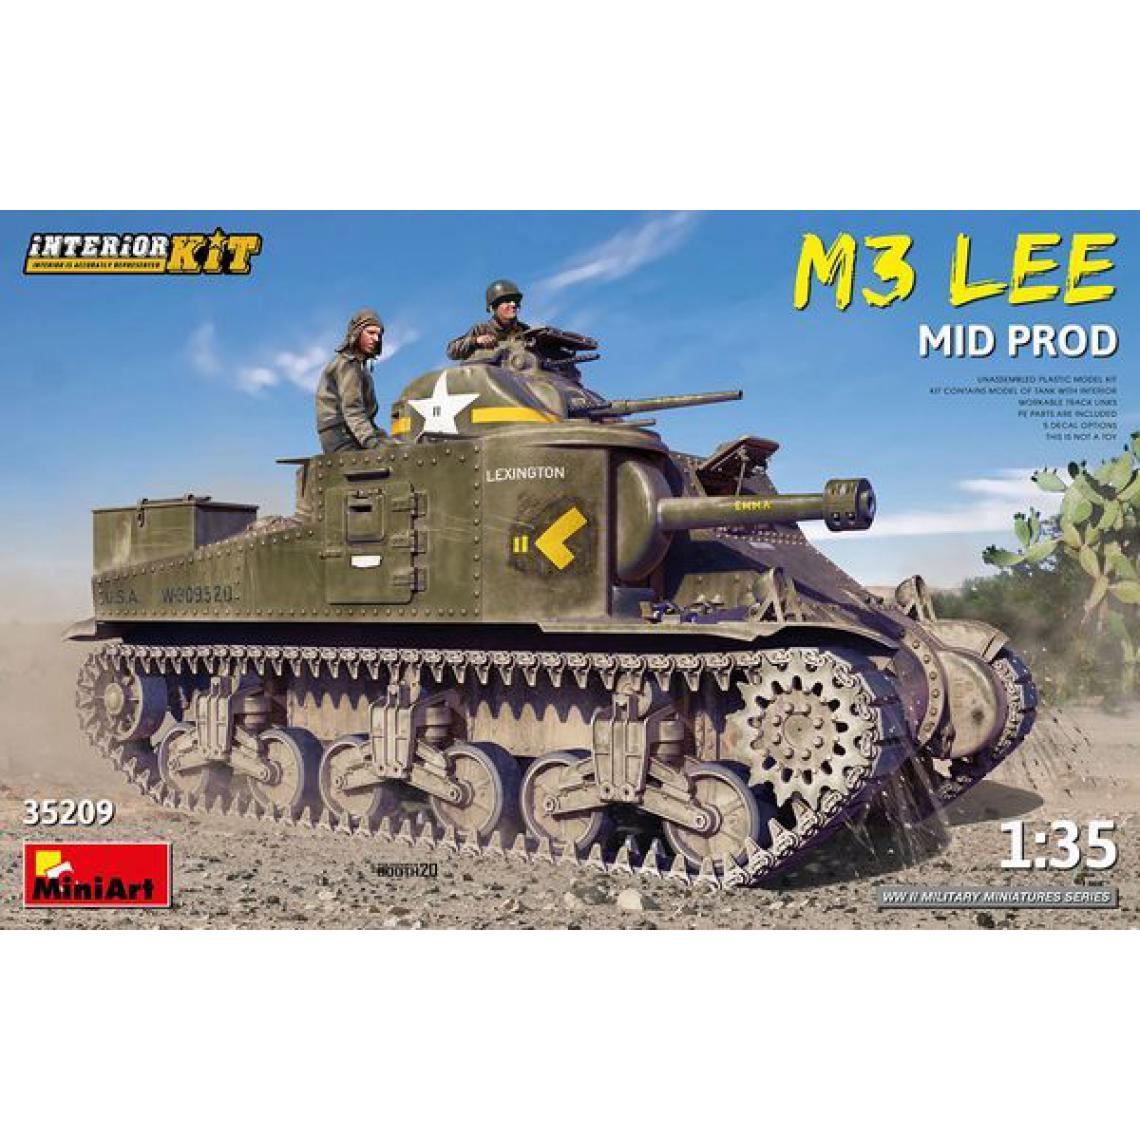 Mini Art - M3 Lee Mid Prod. Interior Kit - 1:35e - MiniArt - Accessoires et pièces